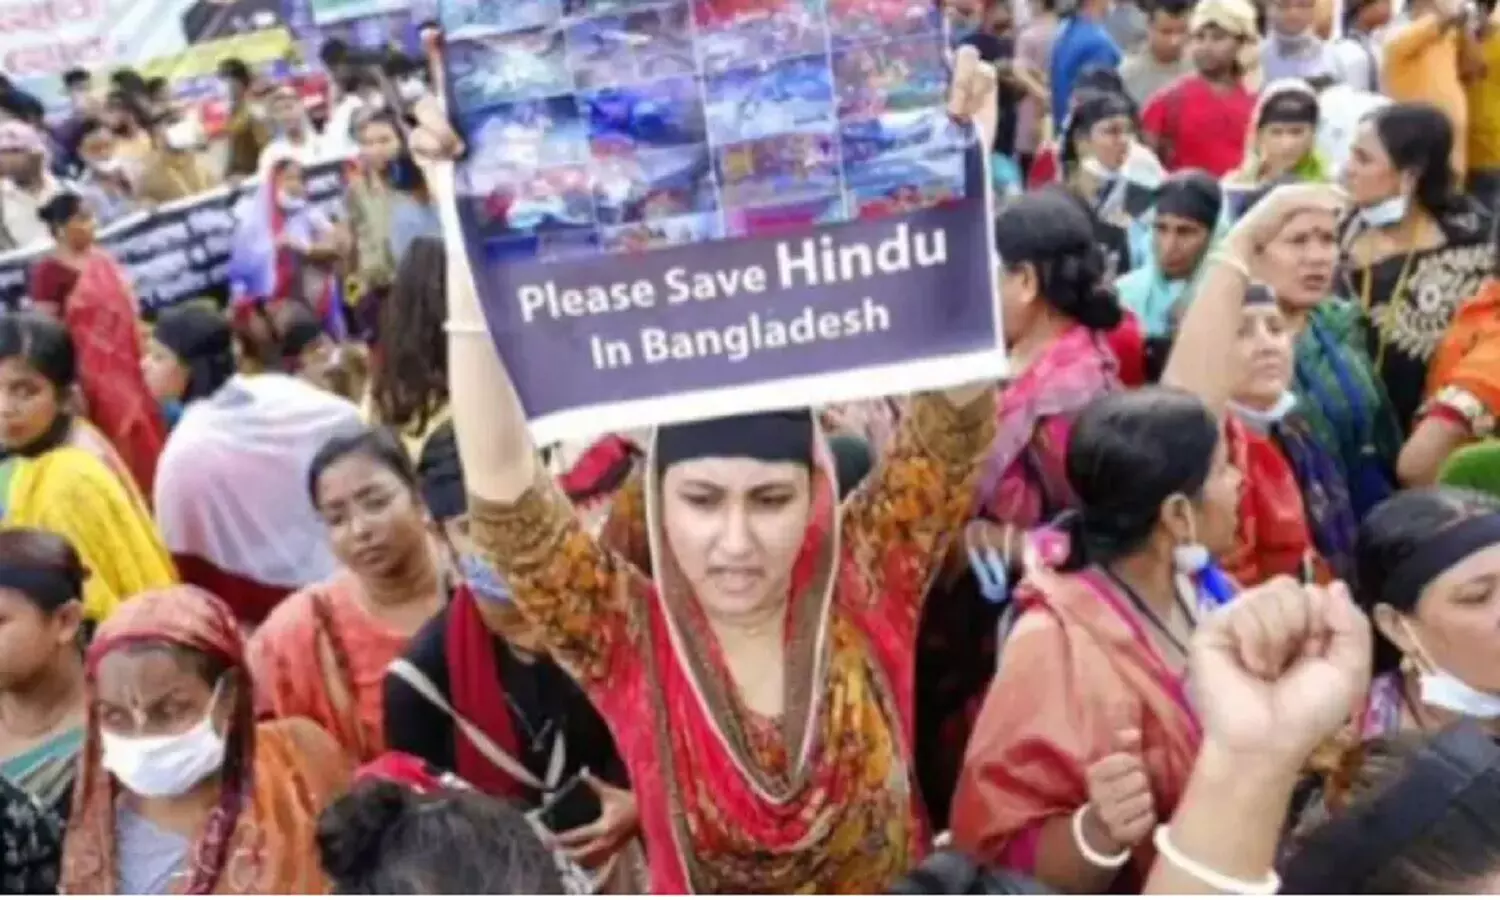 बांग्लादेश के मुसलमानों ने वहां रहने वाले हिन्दुओं का जीवन नरक बना दिया है